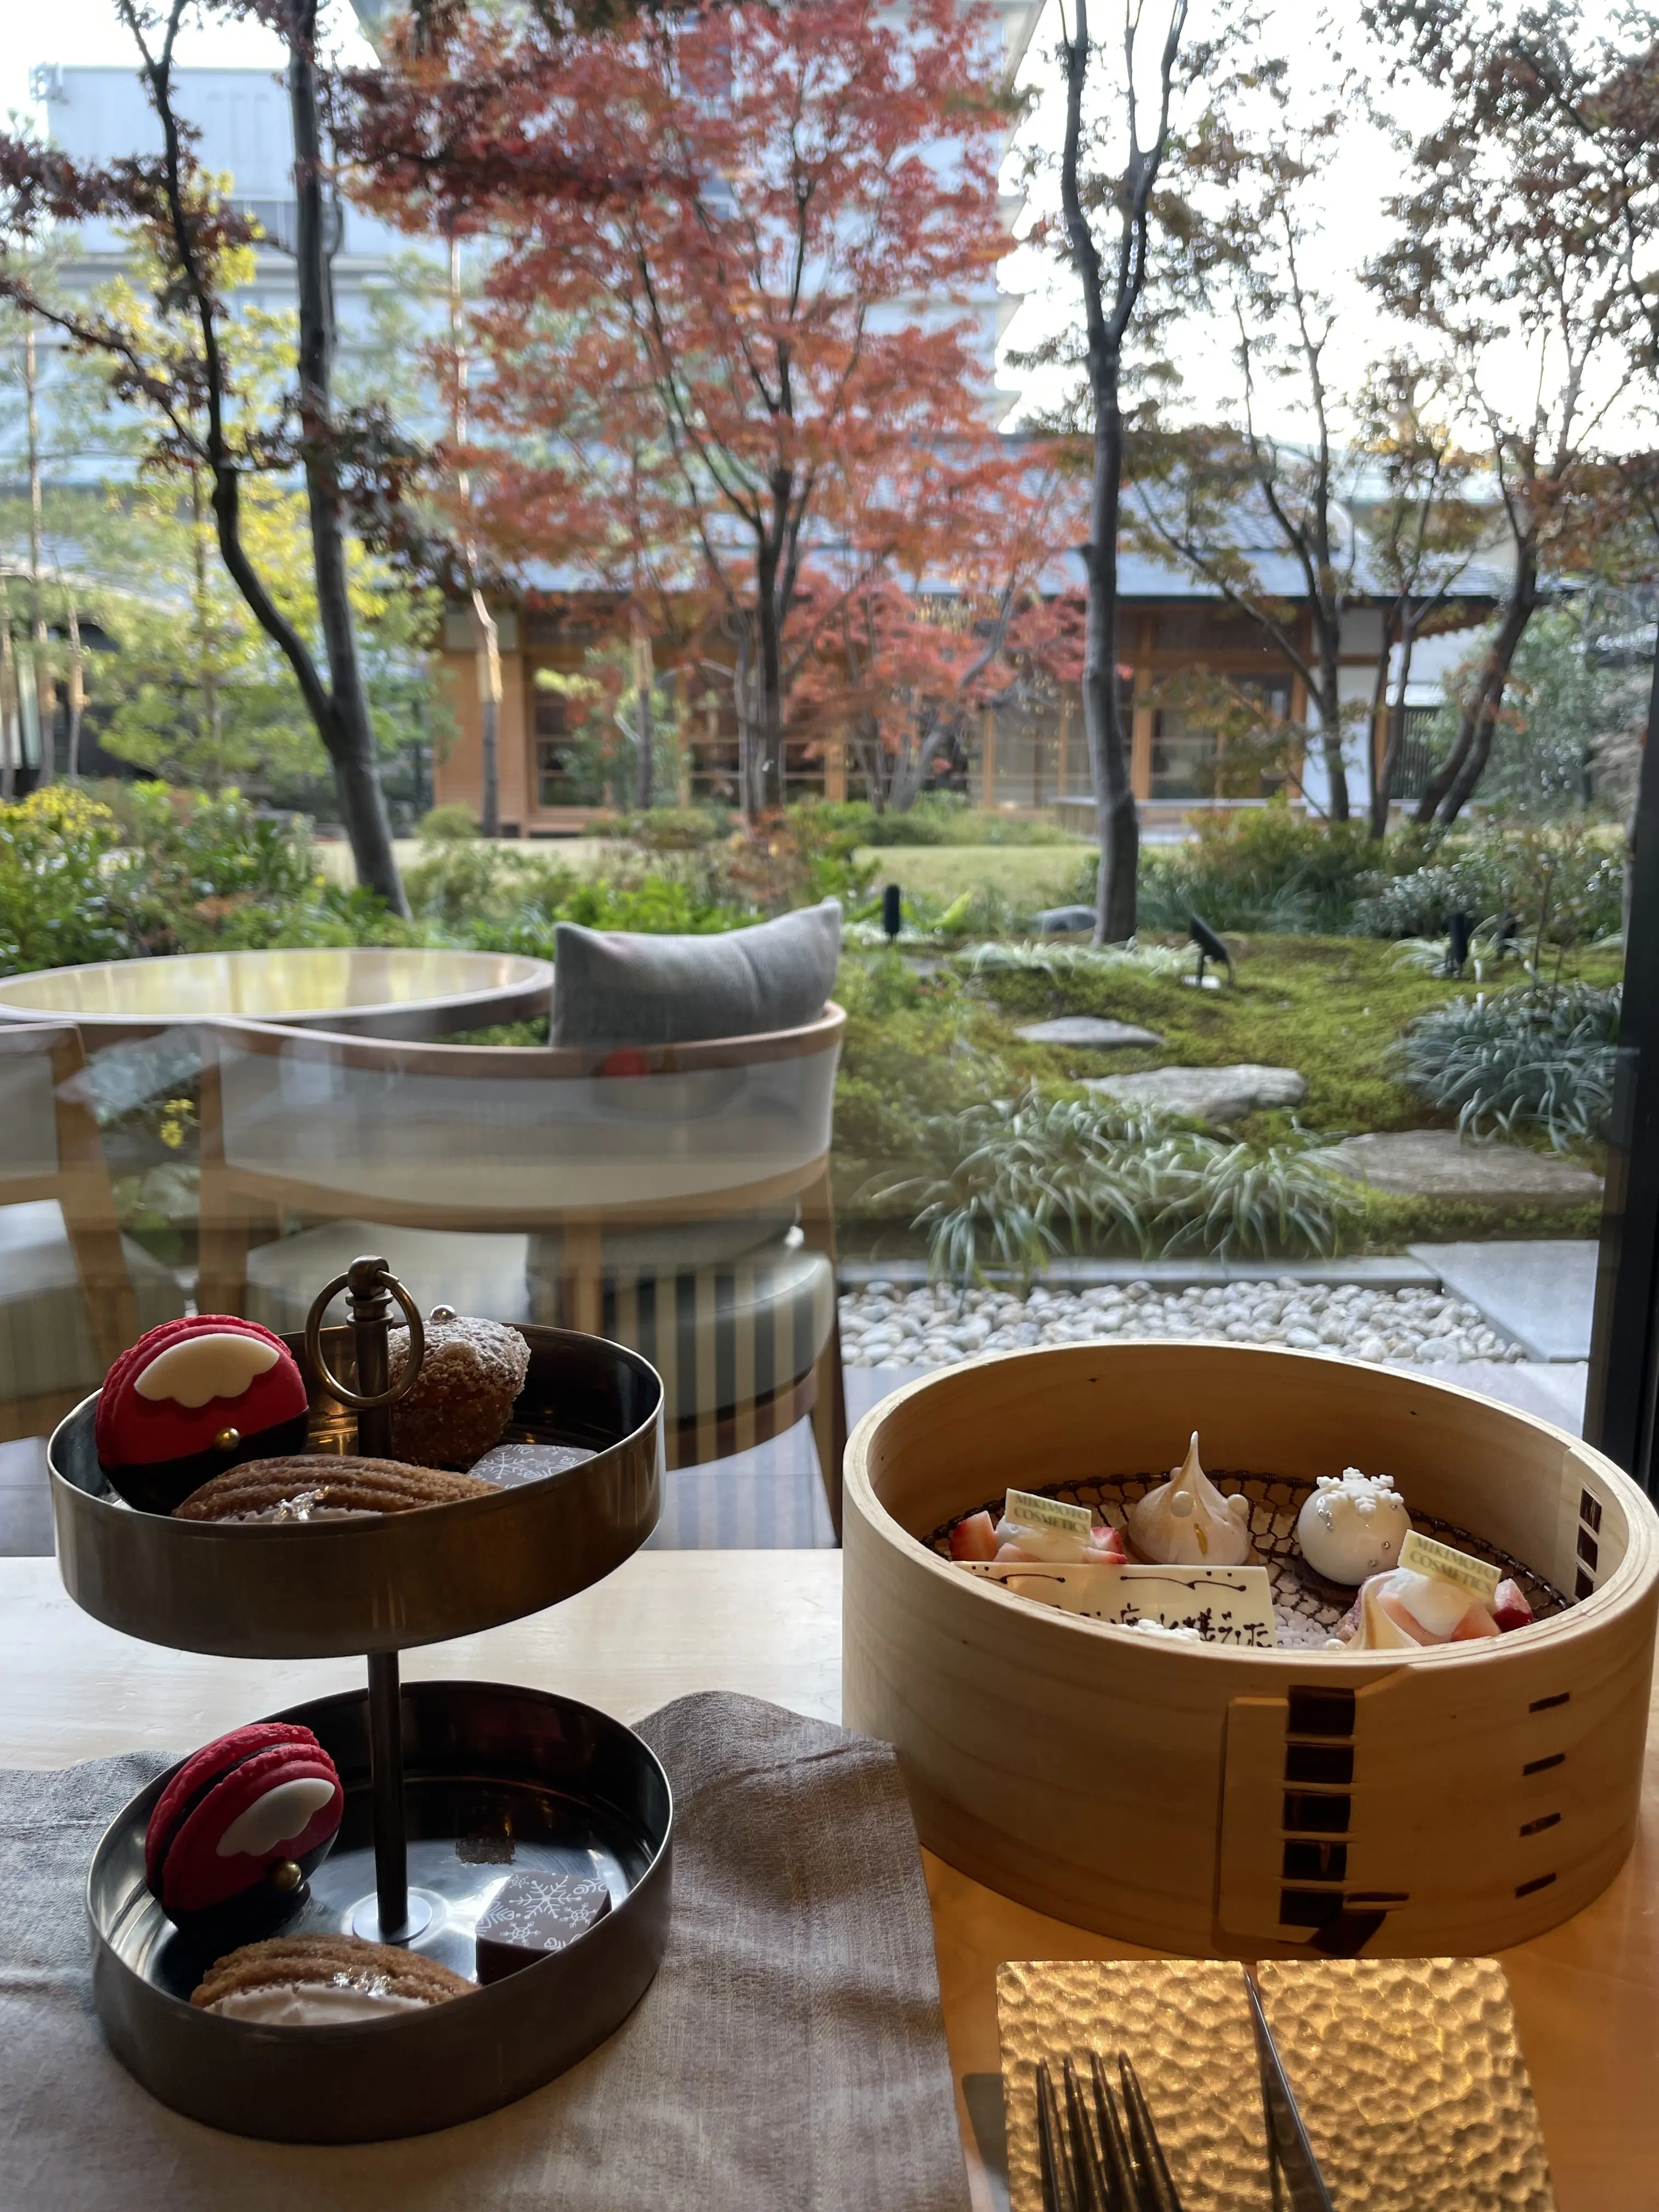 美しい日本庭園を眺めながら。京都で楽しむアフターヌーンティー_1_6-2